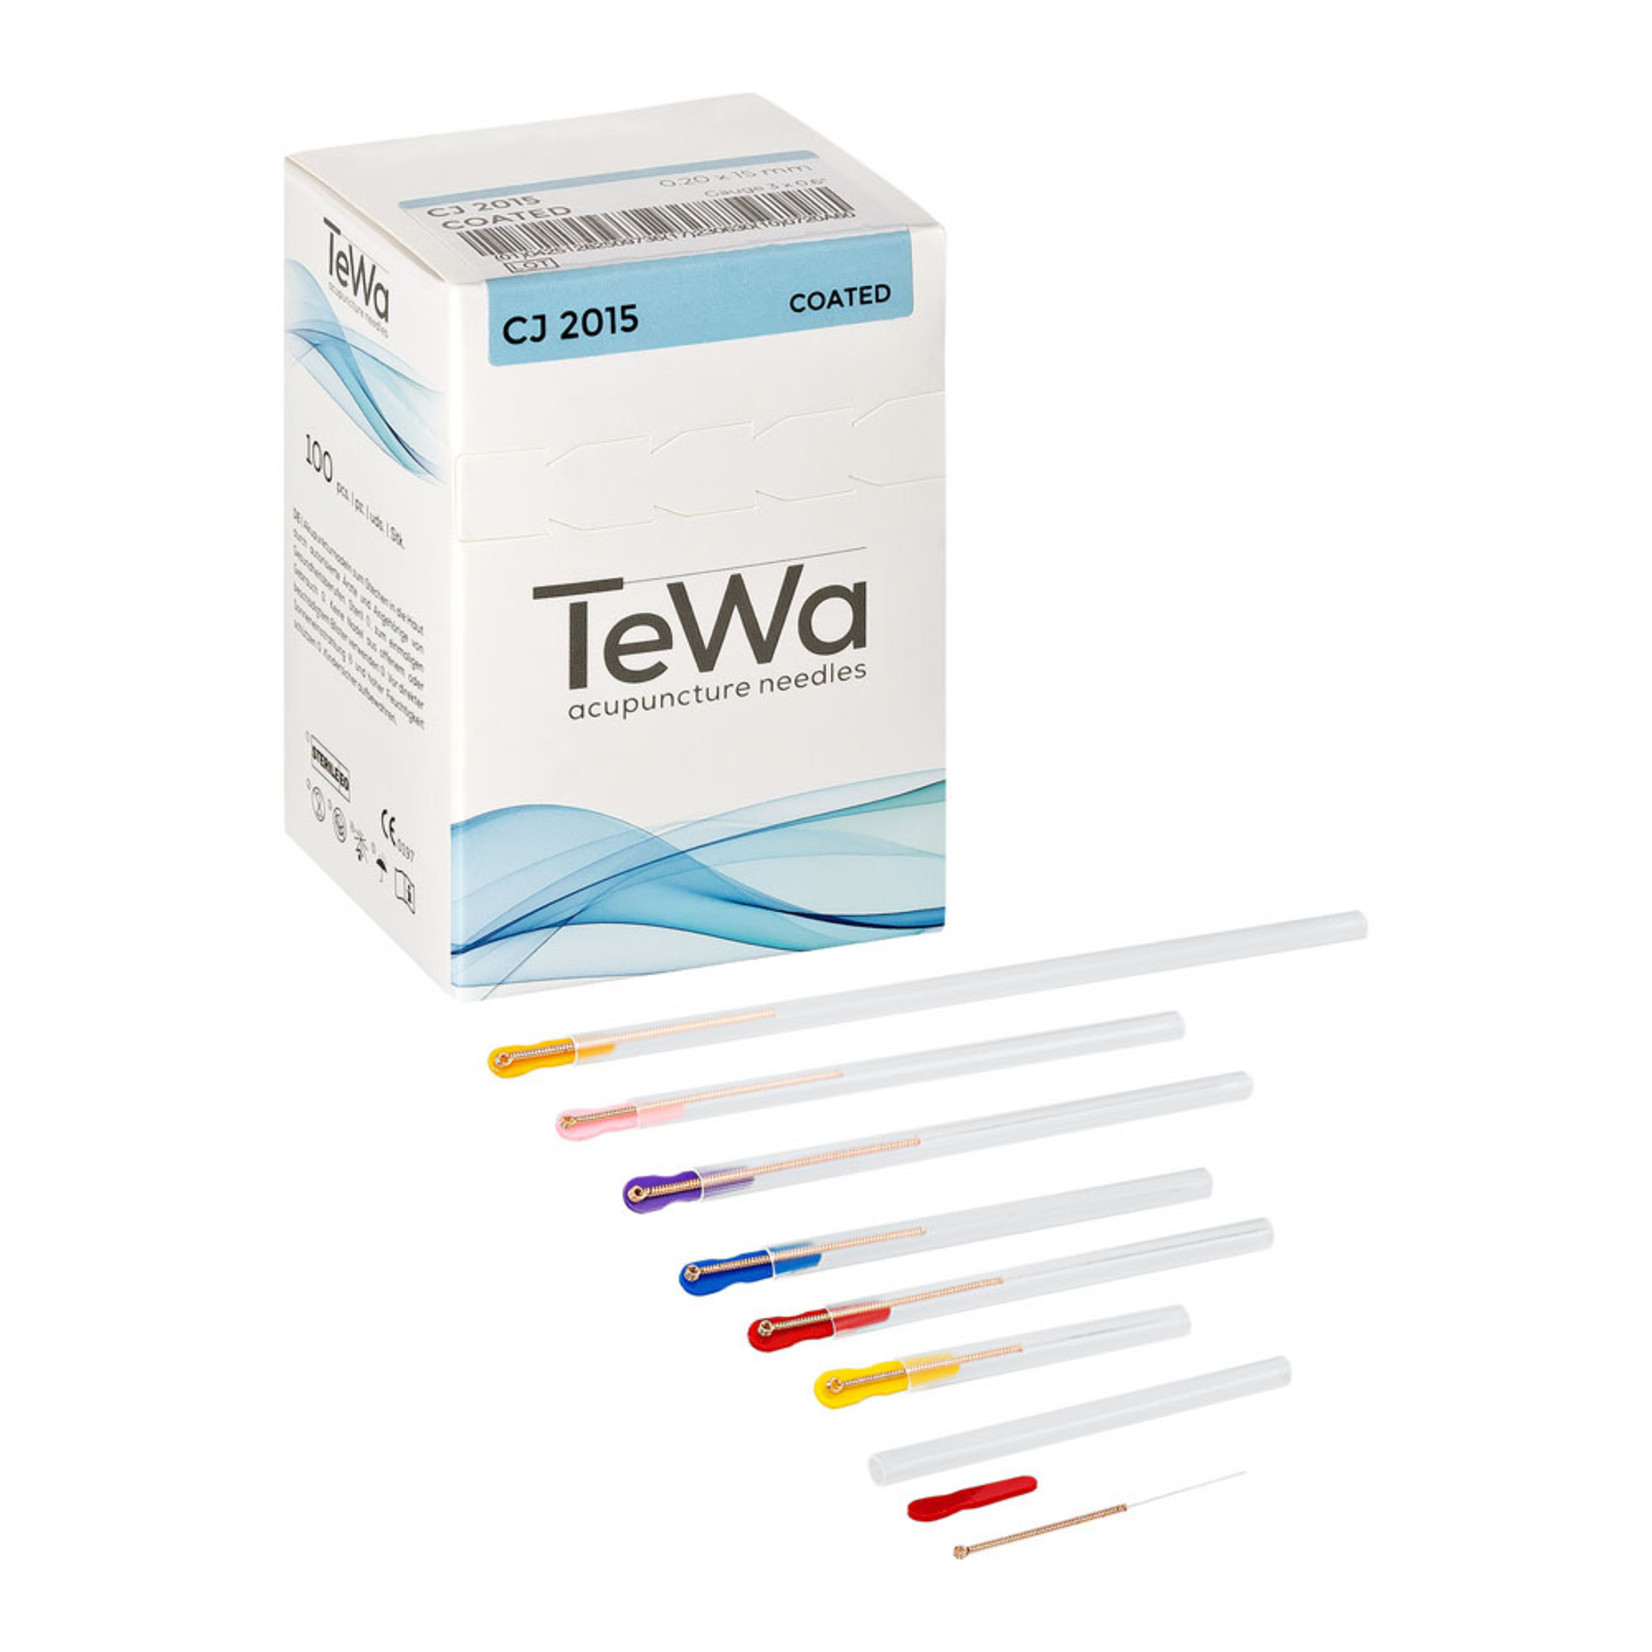 TEWA TEWA COATED ACUPUNCTURE NEEDLE .25 X 15mm BOX OF 100